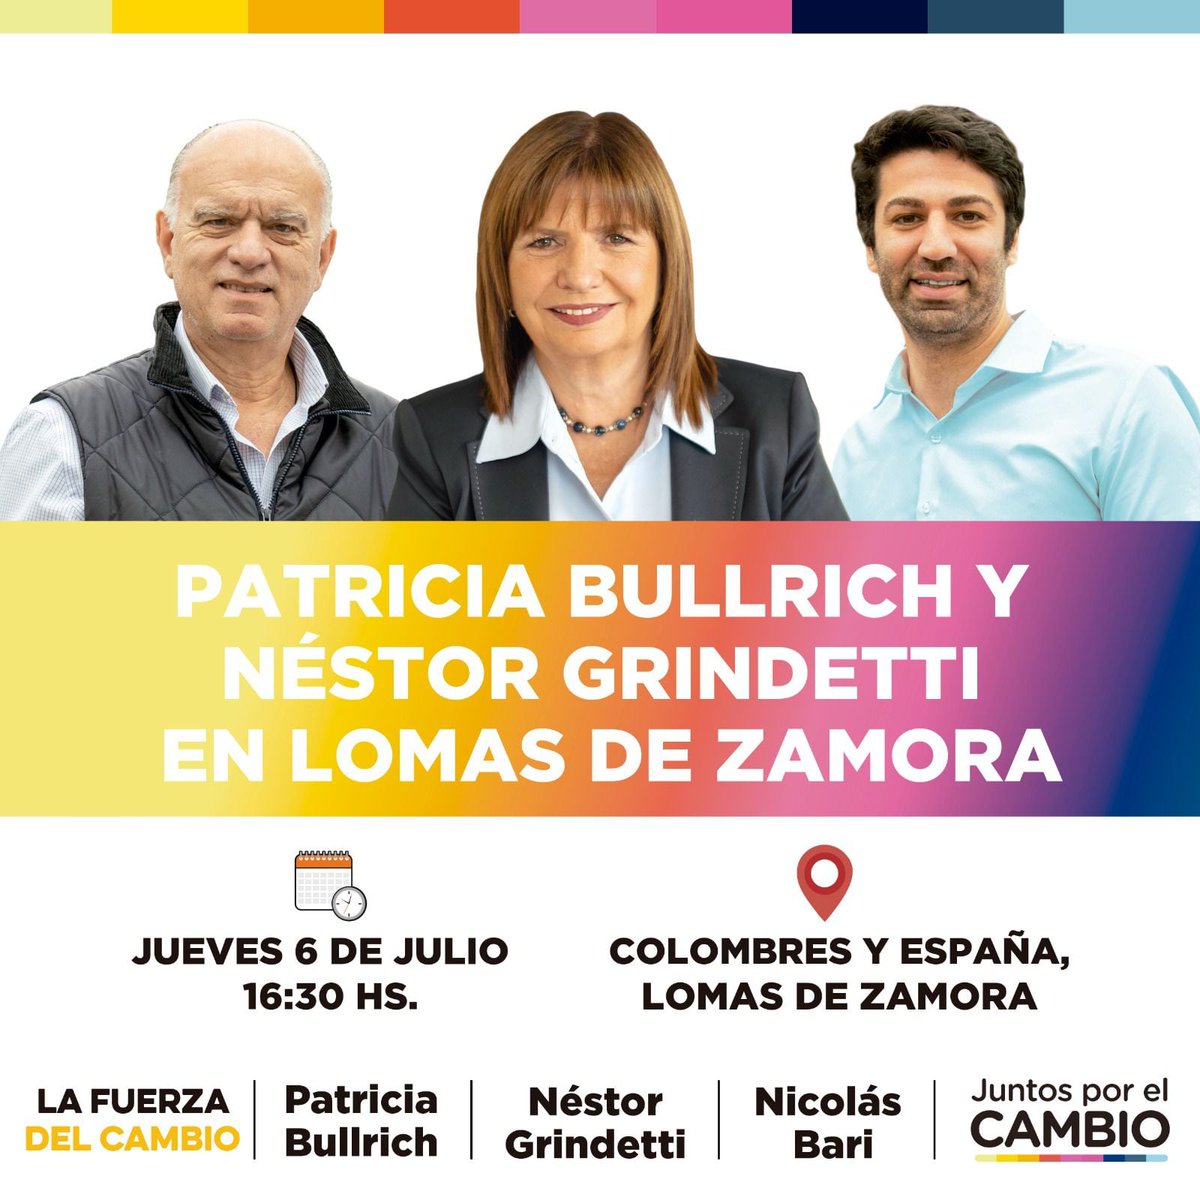 Este jueves #LaFuerzaDelCambio en #Lomas @PatoBullrich @Nestorgrindetti @NicoBari @adrianurreli